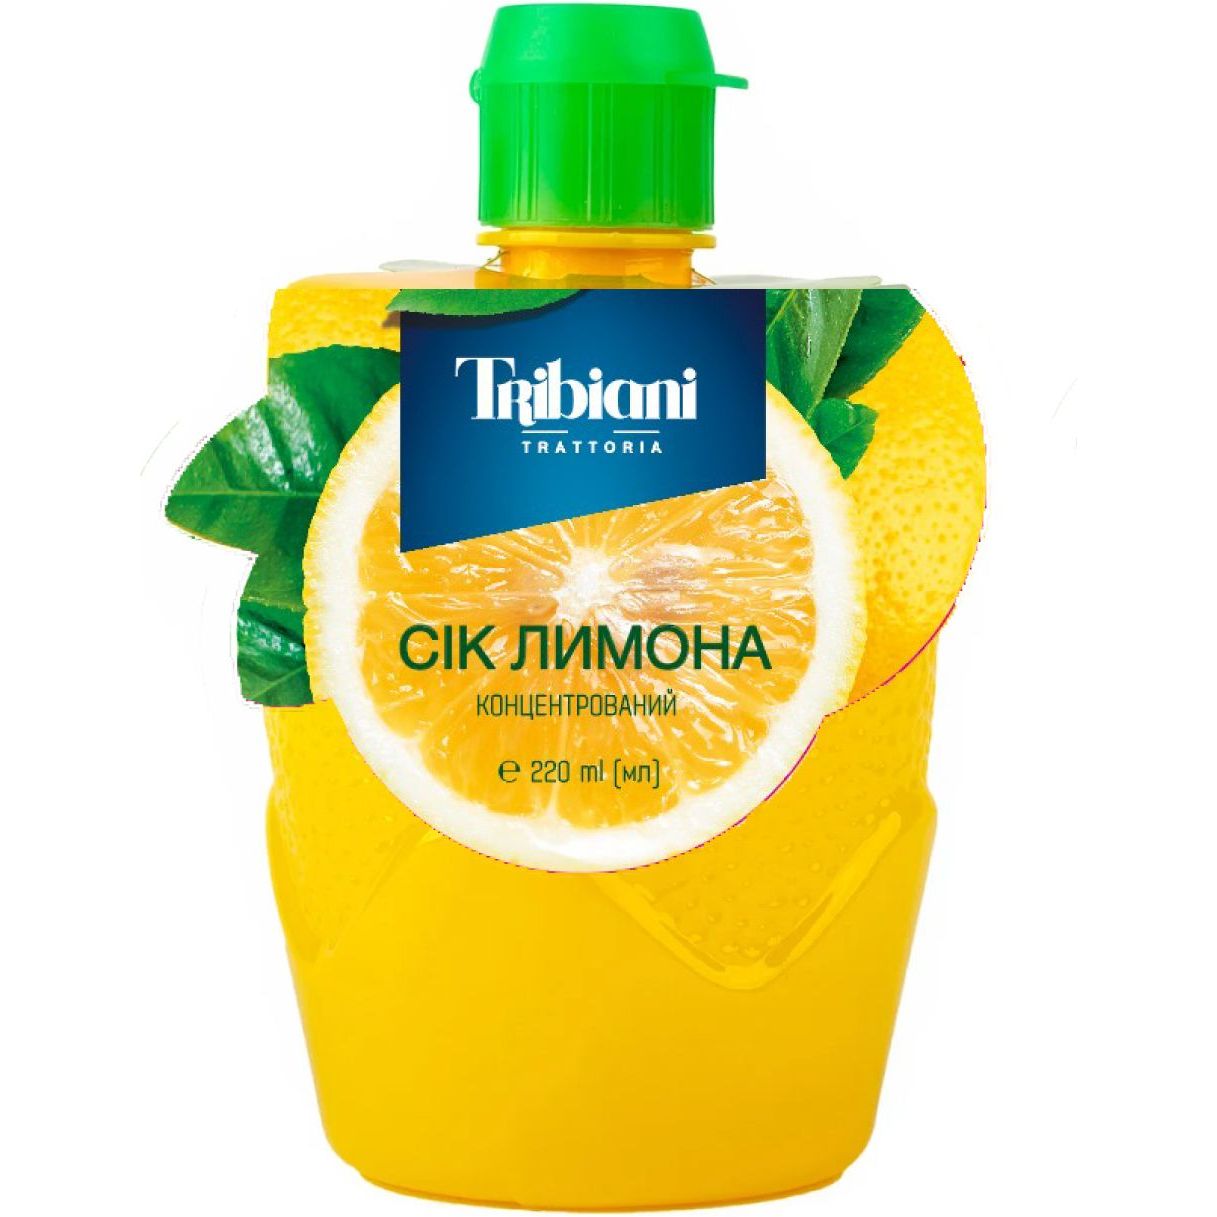 Сок лимона Tribiani концентрированный 220 мл - фото 1